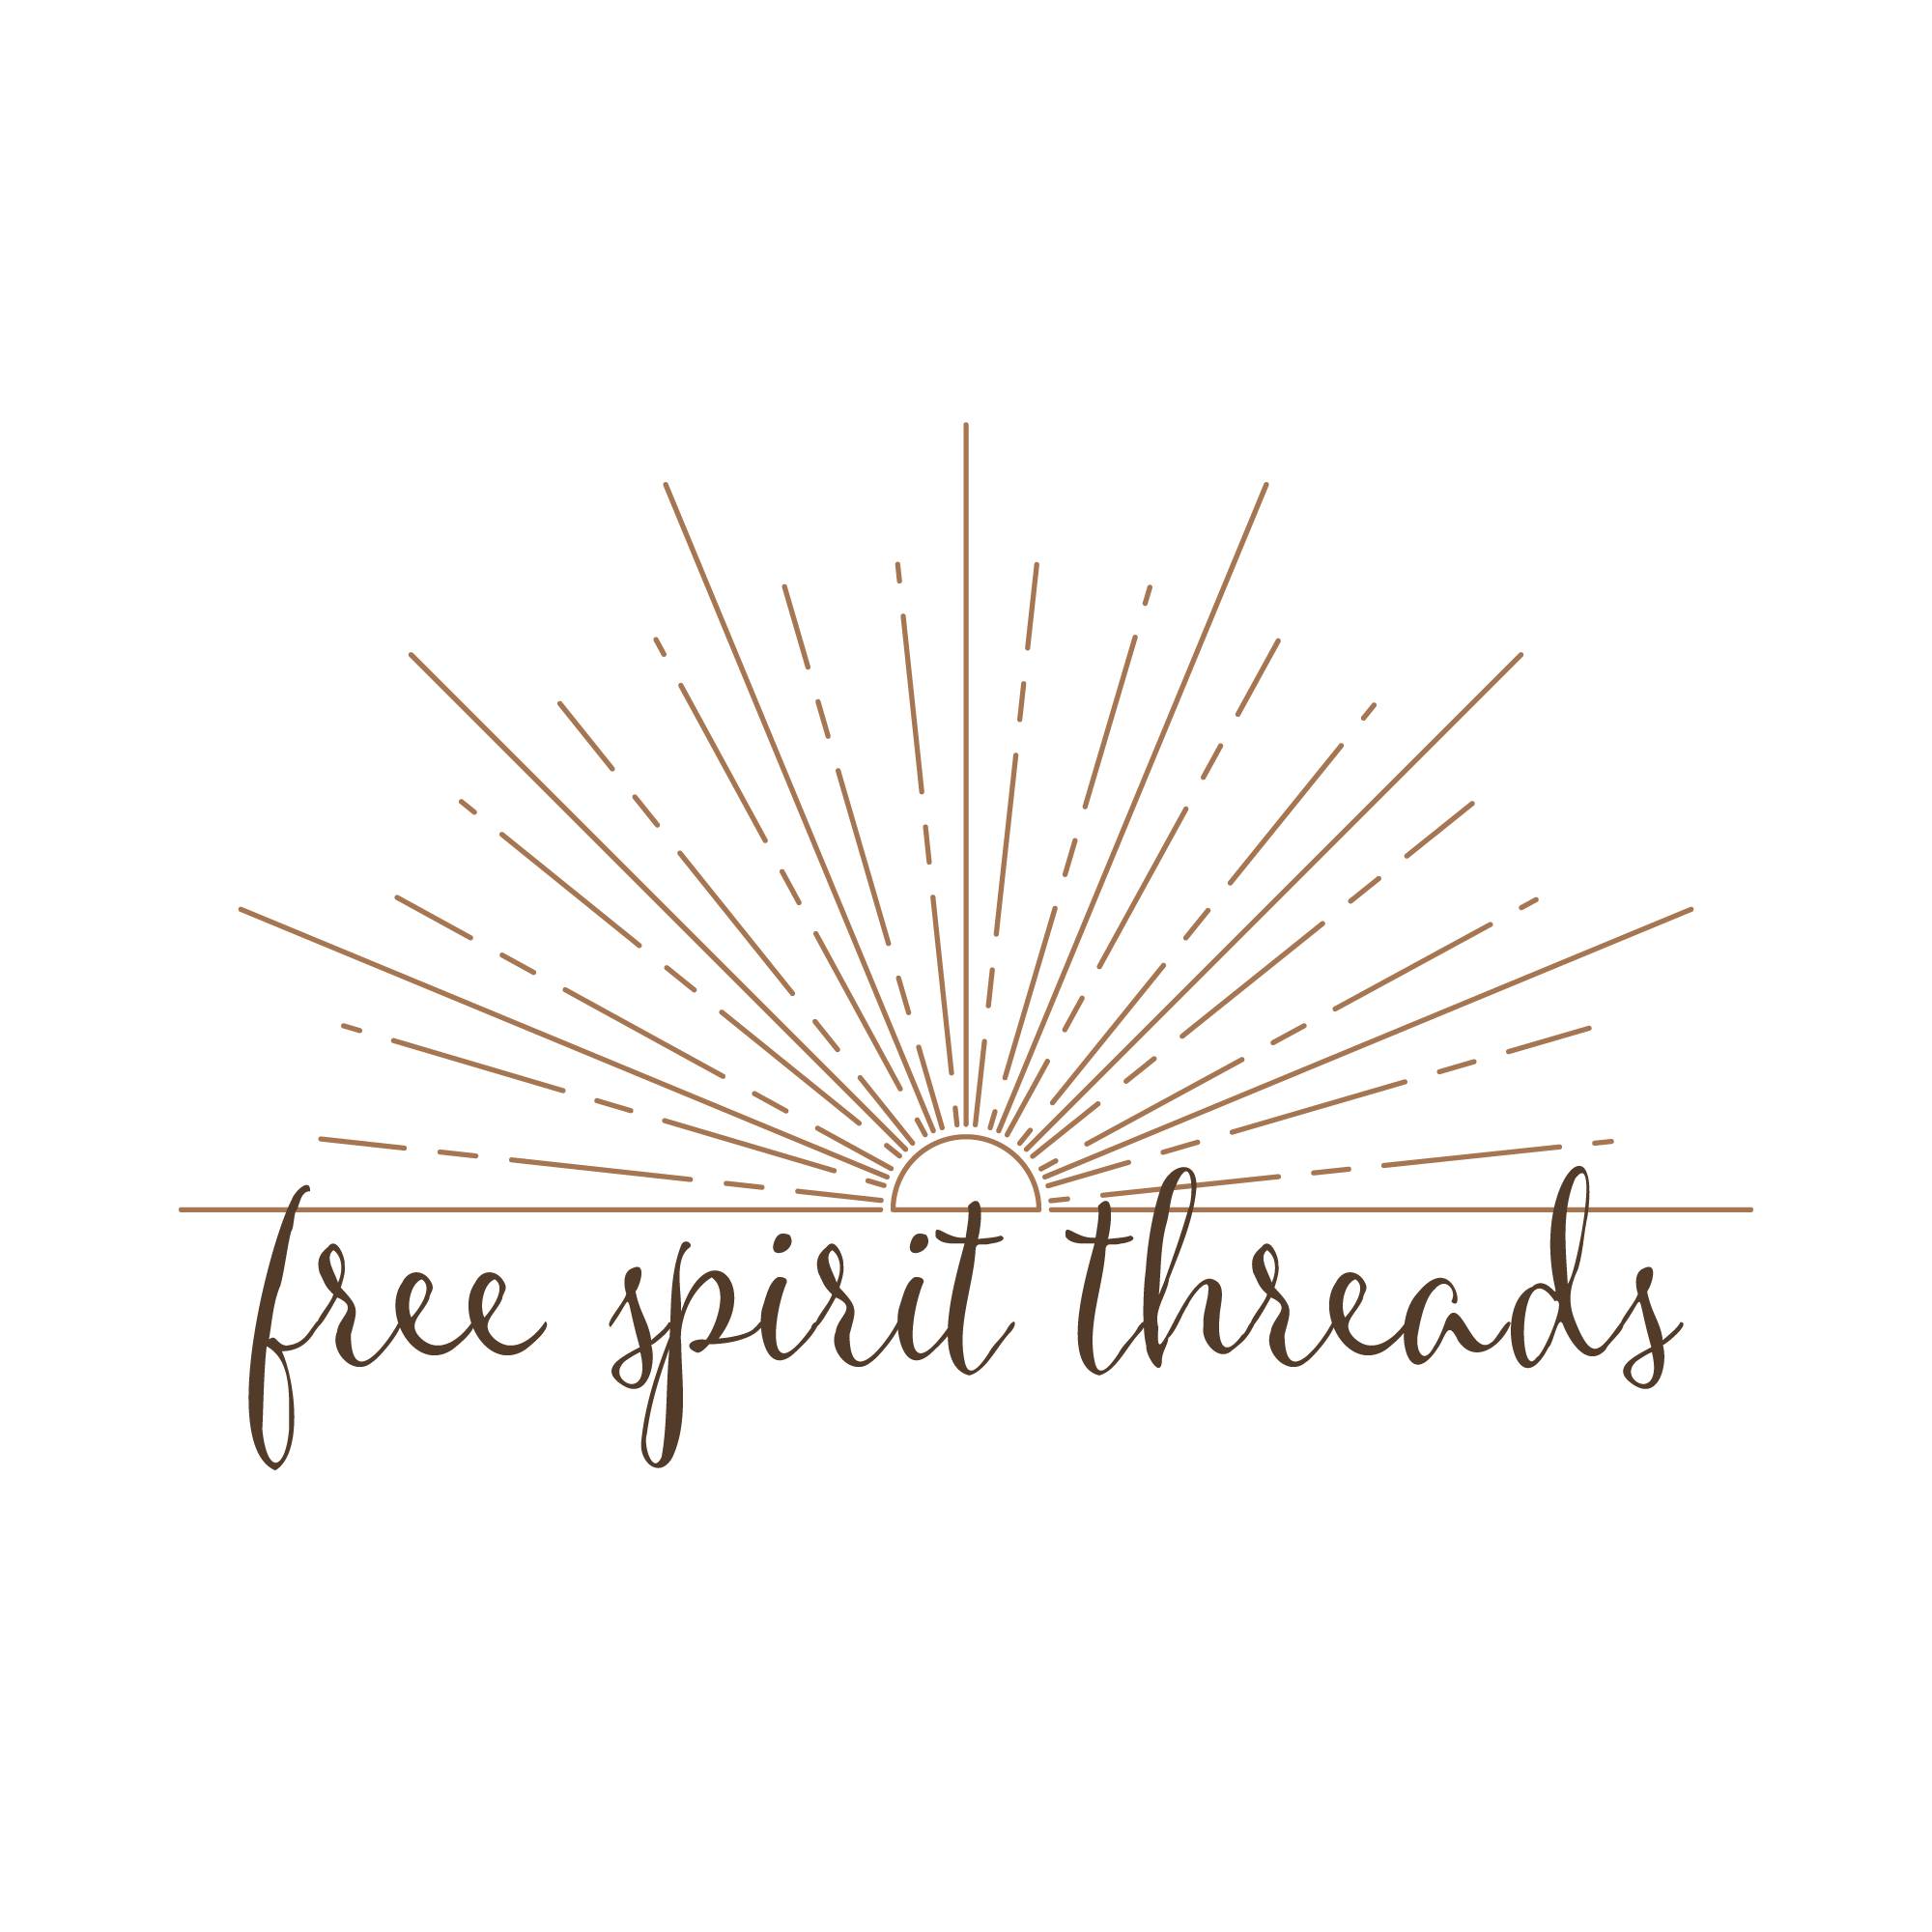 Free Spirit Threads